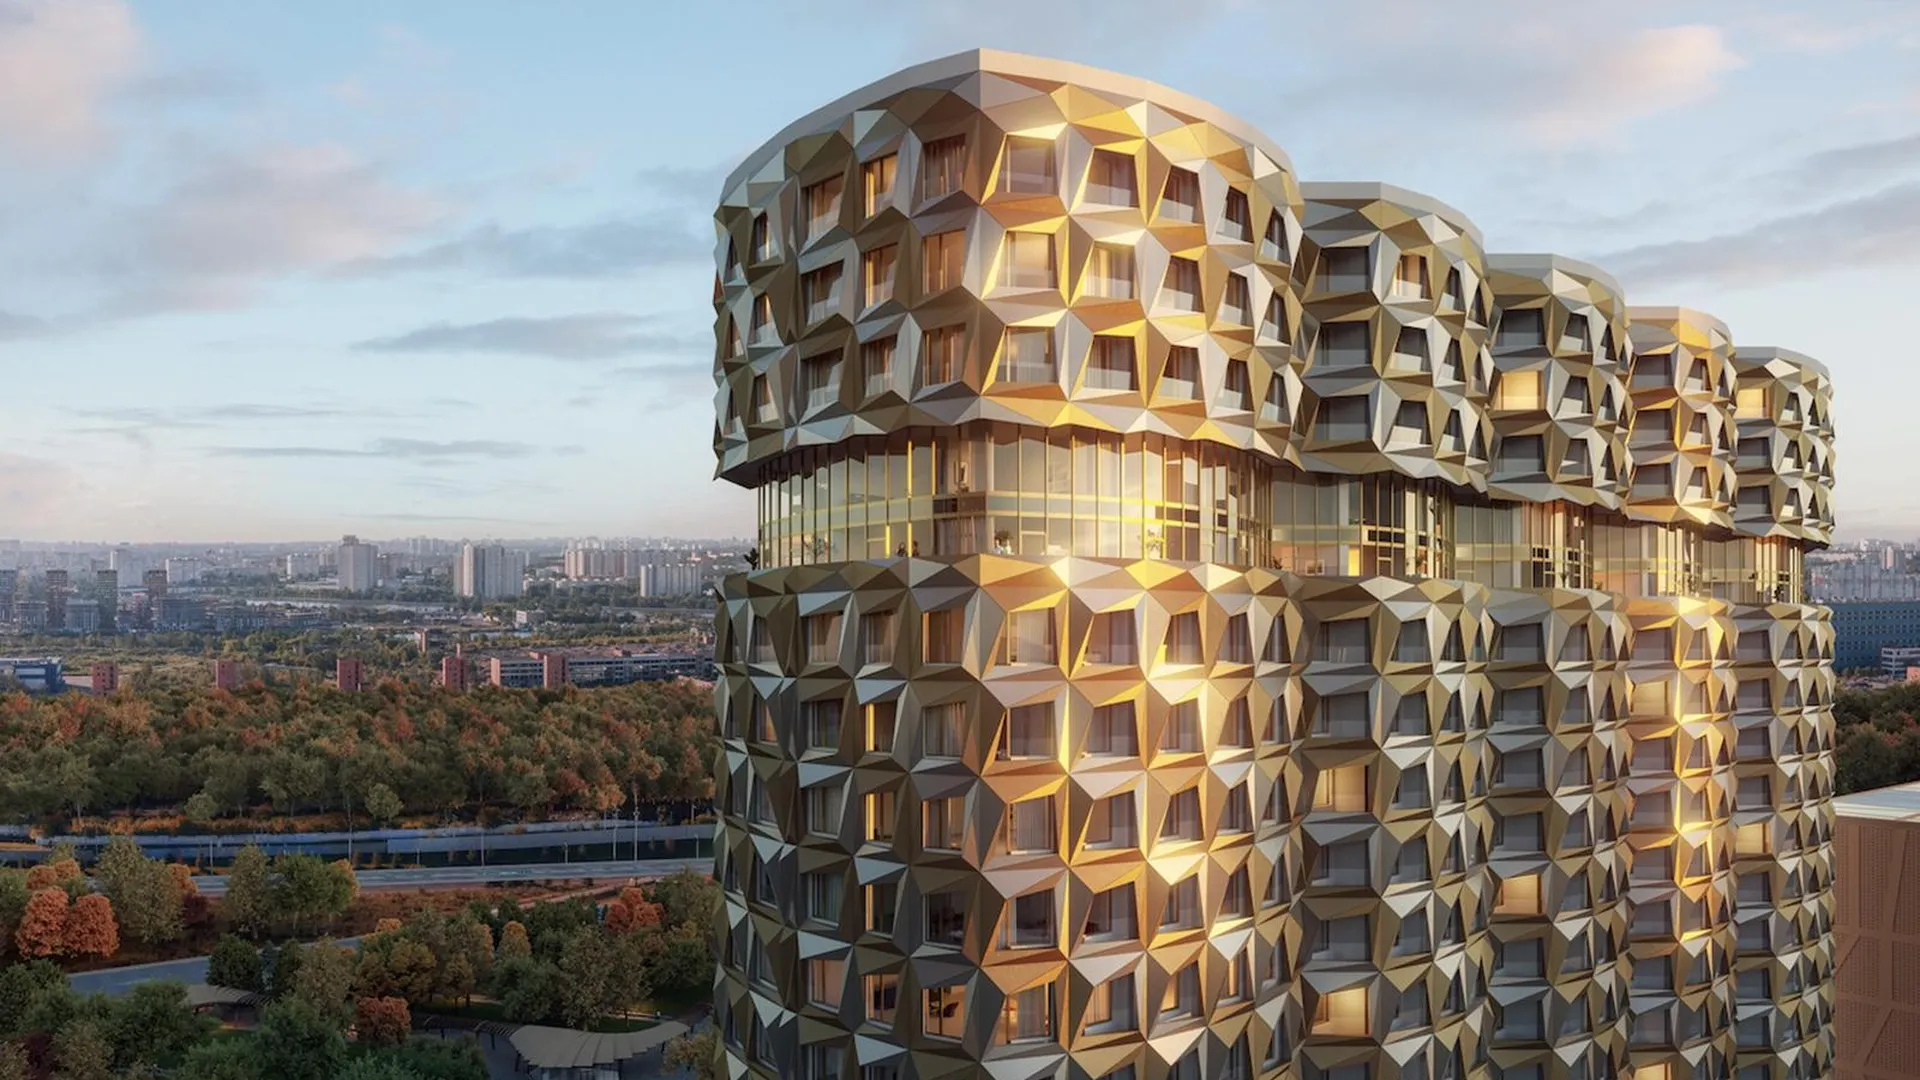 сайт комплекса градостроительной политики и строительства Москвы